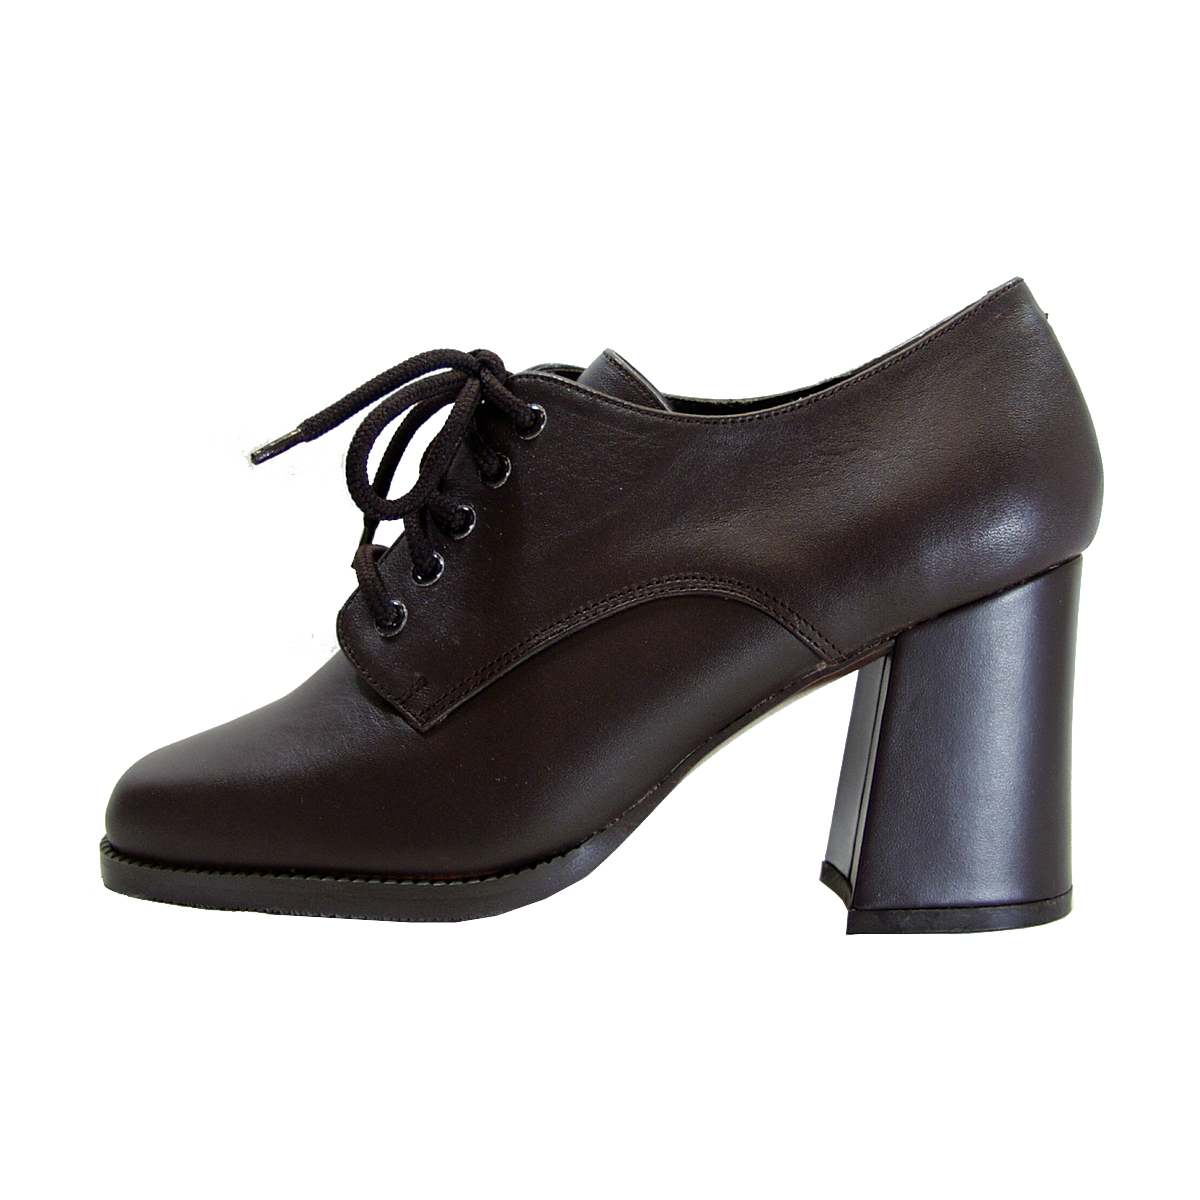 PEERAGE Ember Women's Wide Width Leather High-Heel Oxford Pumps BROWN 10 - image 3 of 6